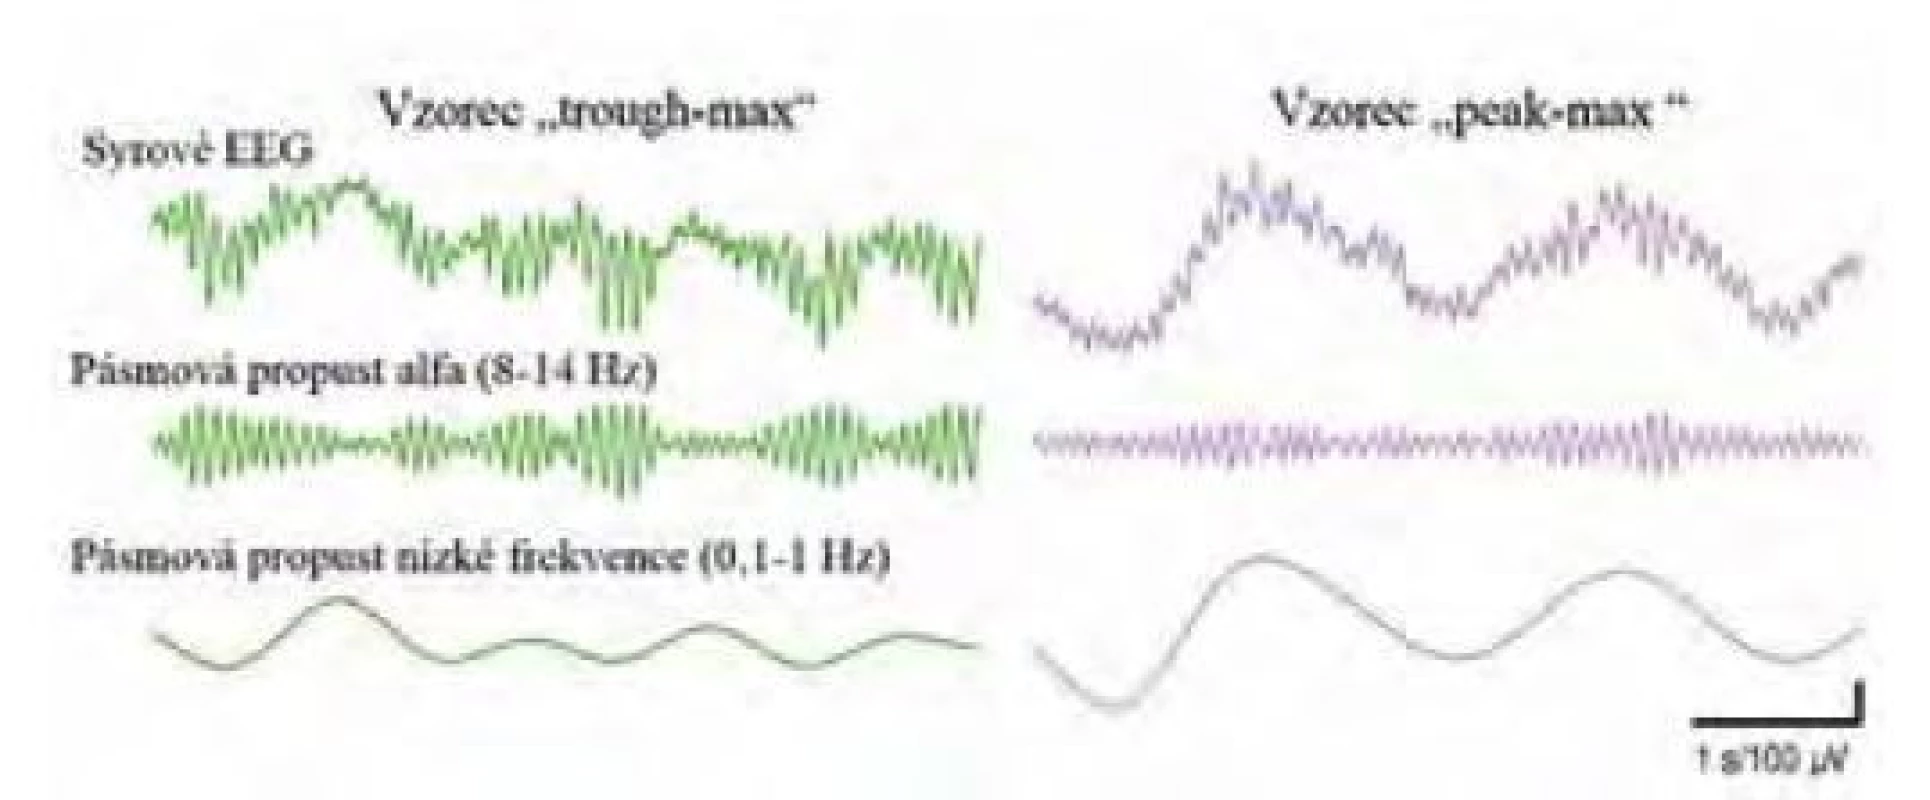 Dva odlišné vzorce vazby mezi fází a amplitudou (phase-amplitude
coupling). Vzorec „peak-max“ odpovídá chirurgické anestezii, amplituda
alfa oscilací je nejvyšší na vrcholech pomalých oscilací, kdežto „trough-max“,
u něhož je amplituda alfa oscilací nejvyšší v údolích pomalých oscilací, znamená
příliš mělkou, nebo naopak příliš hlubokou anestezii. Upraveno z [38]